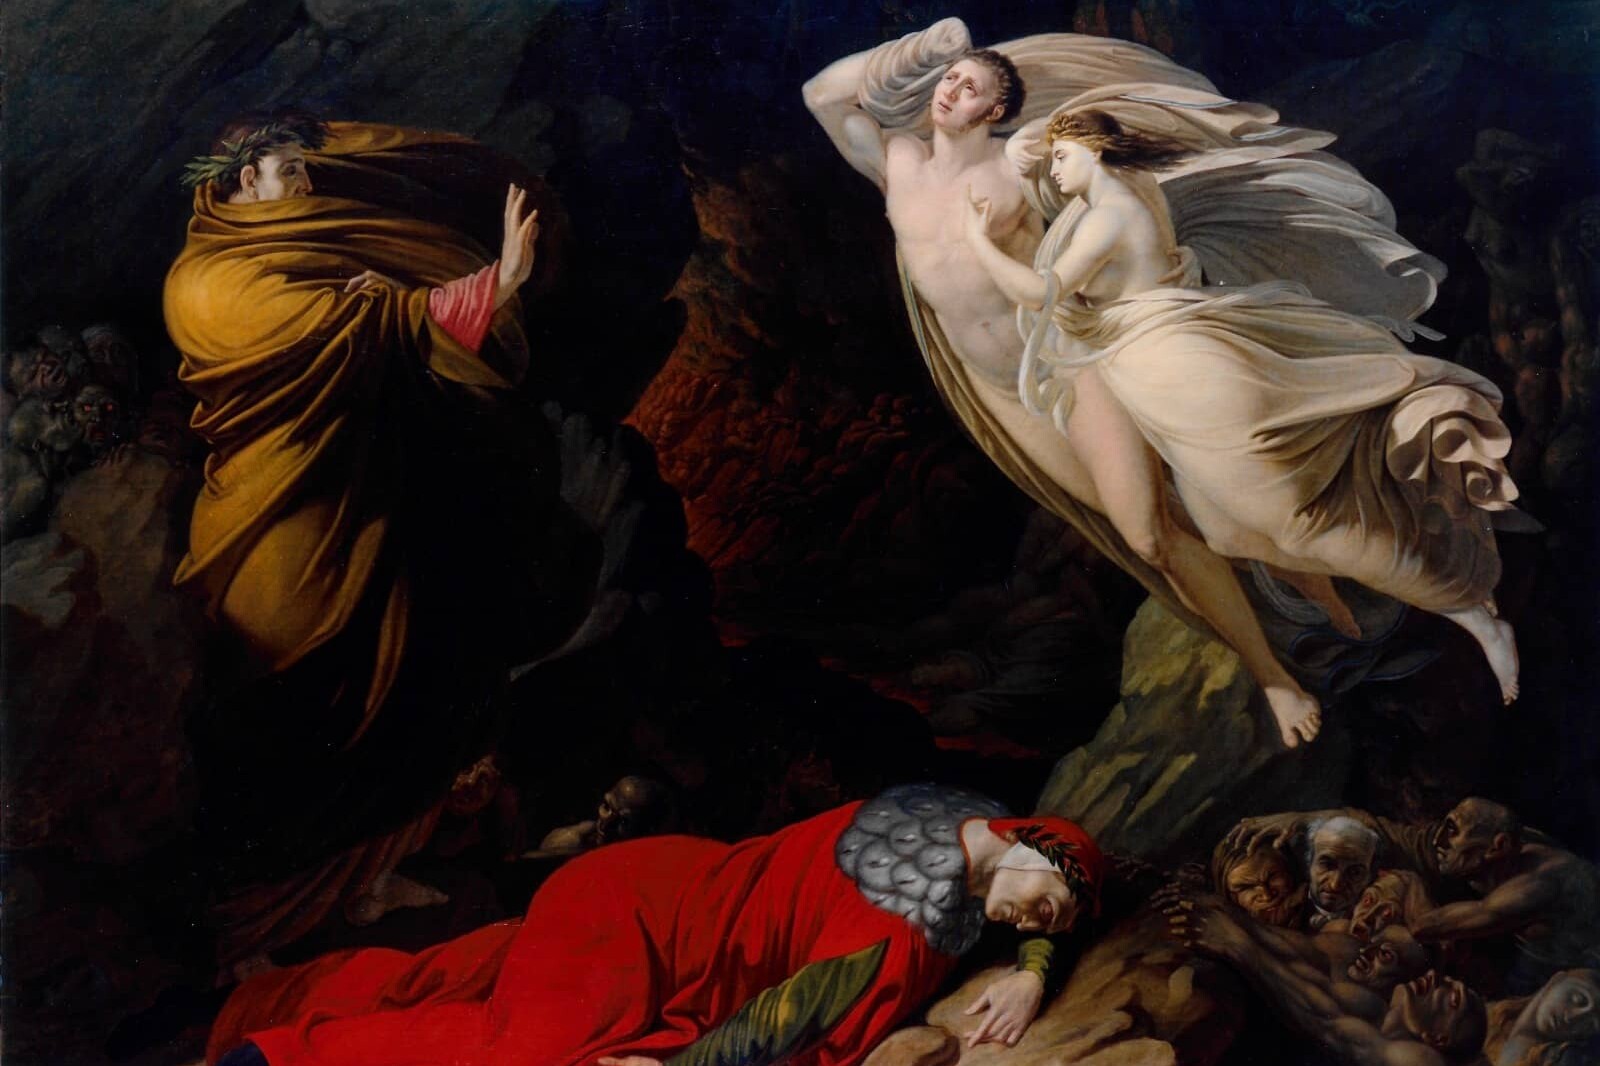 Francesca da Rimini nell'Inferno dantesco, Nicola Monti, 1810, olio su tela (168 x 21 cm). Gallerie degli Uffizi